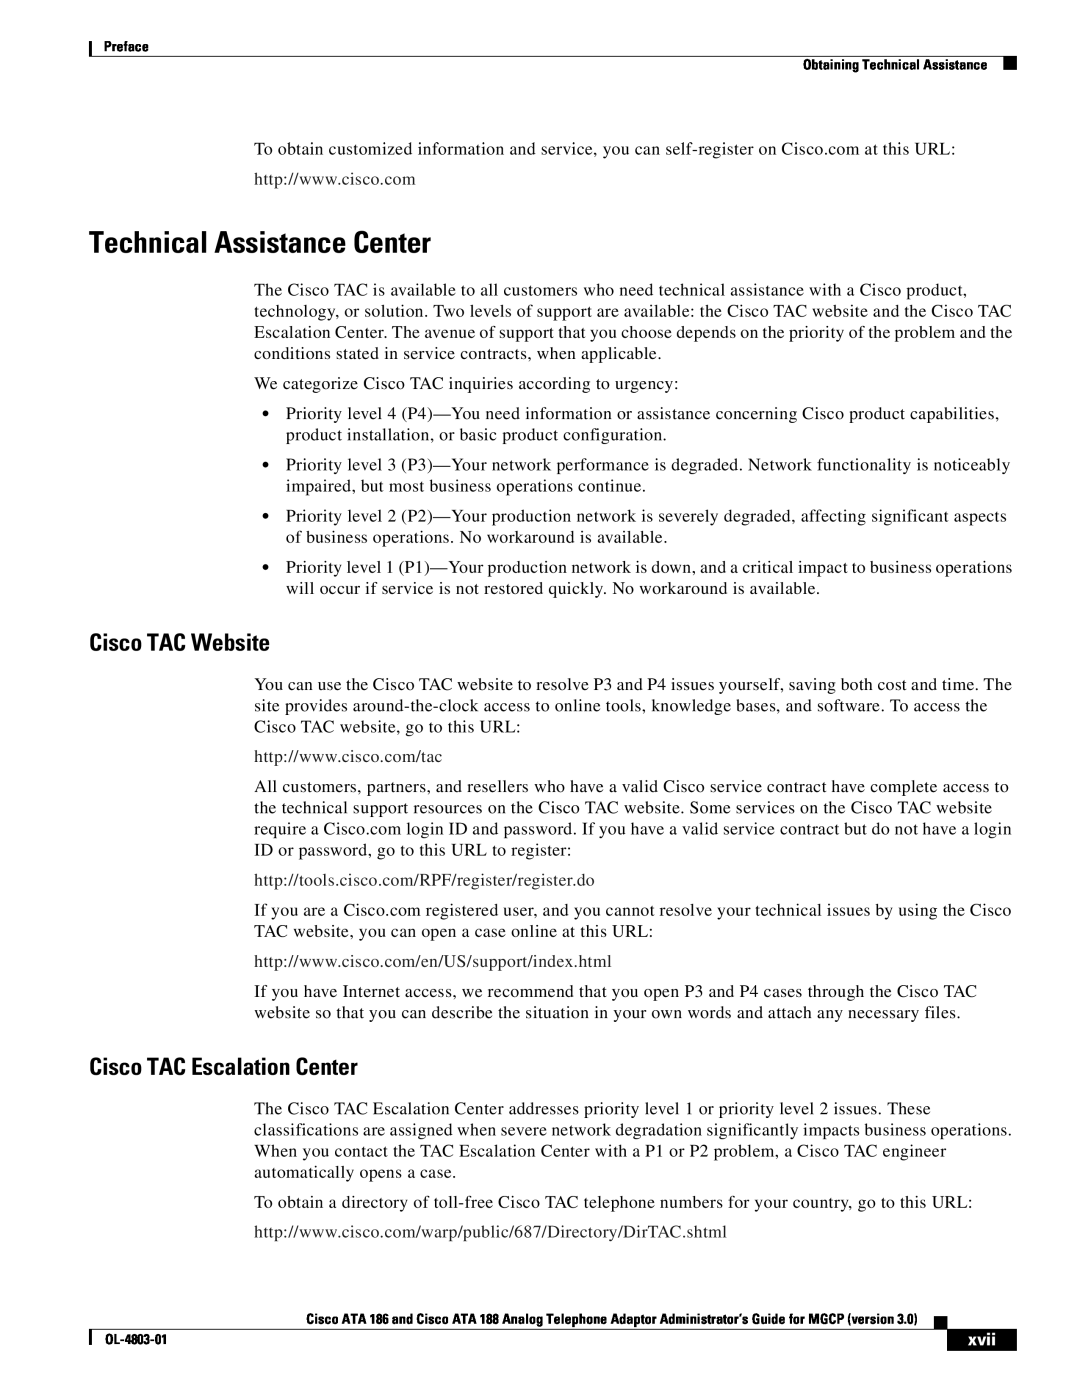 Cisco Systems ATA 186 manual Technical Assistance Center, Cisco TAC Website, Cisco TAC Escalation Center, xvii 